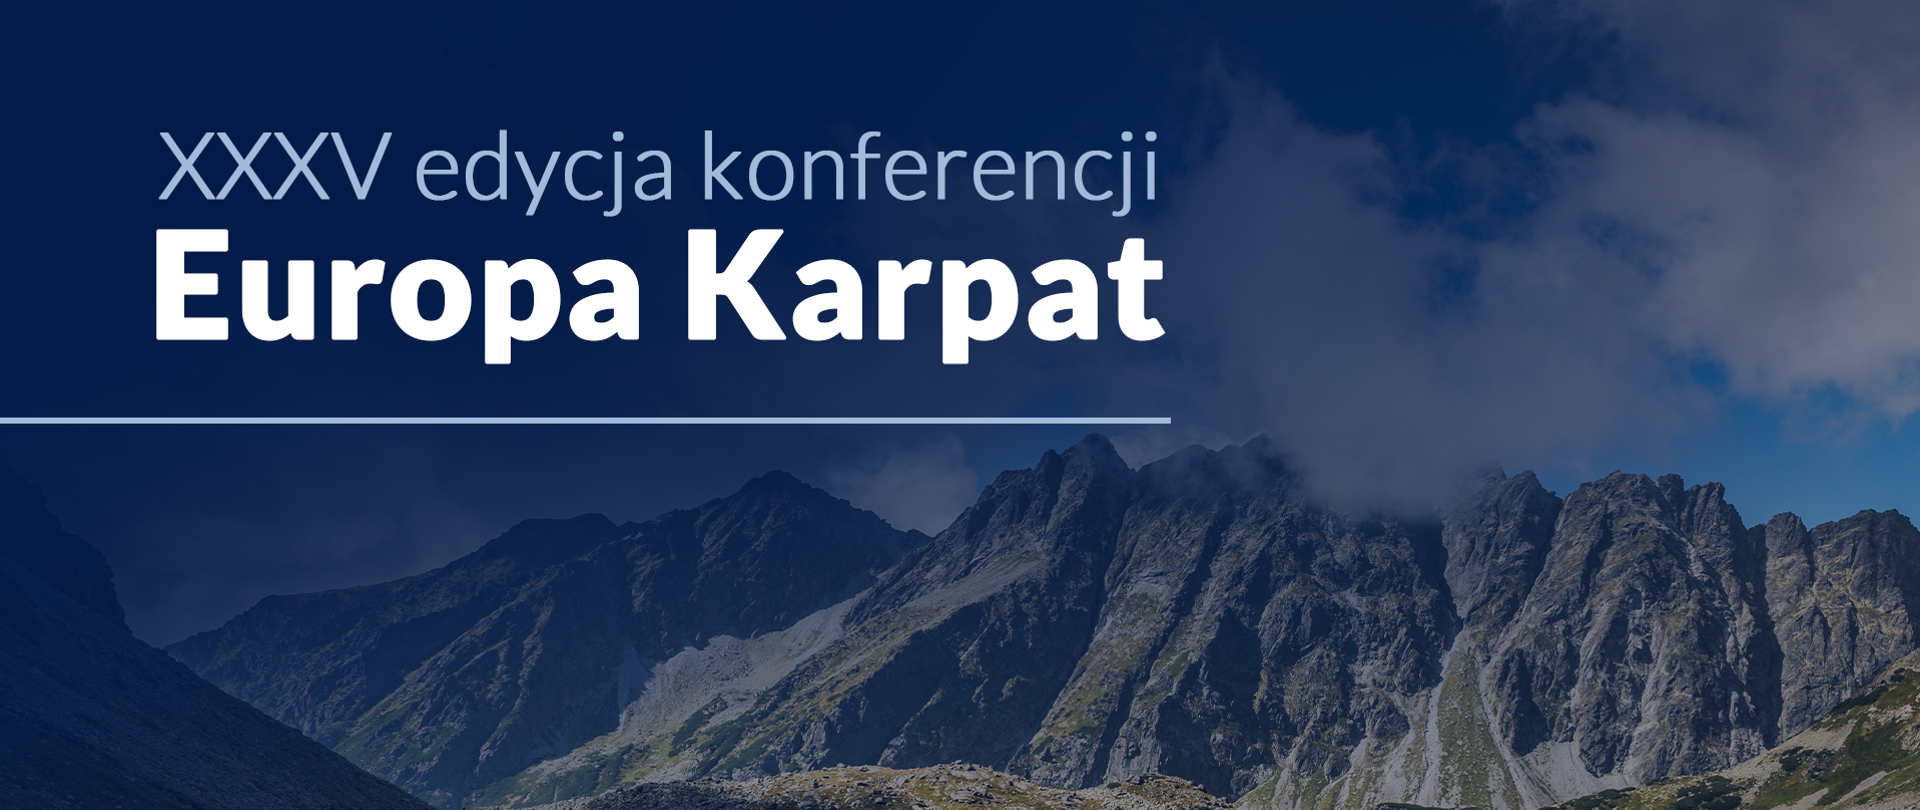 Zapraszamy do udziału w XXXV edycji konferencji Europa Karpat | 24-26 lutego 2023 | Krasiczyn